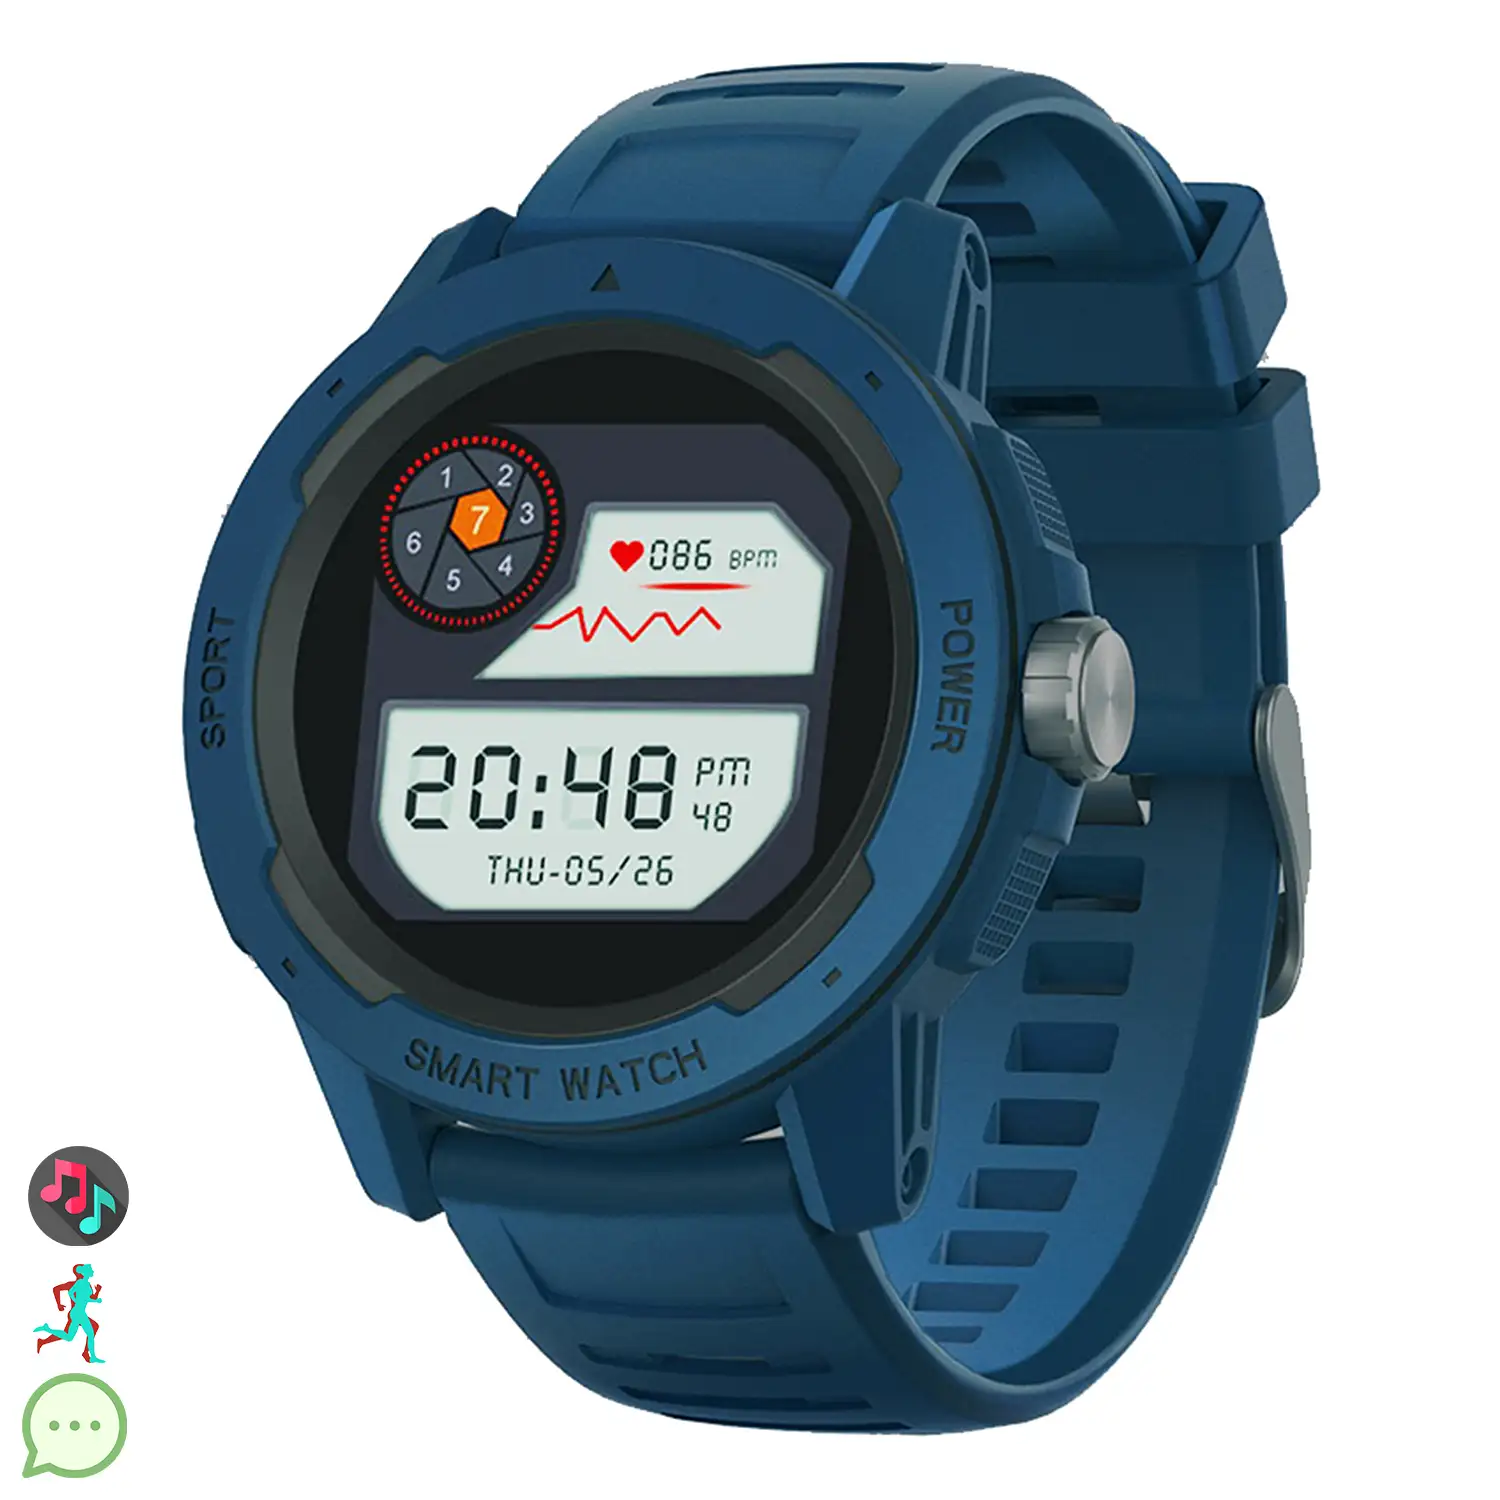 Smartwatch Mars2 con monitor cardiaco, de tensión y O2 en sangre. Varios modos deportivos, notificaciones de apps.